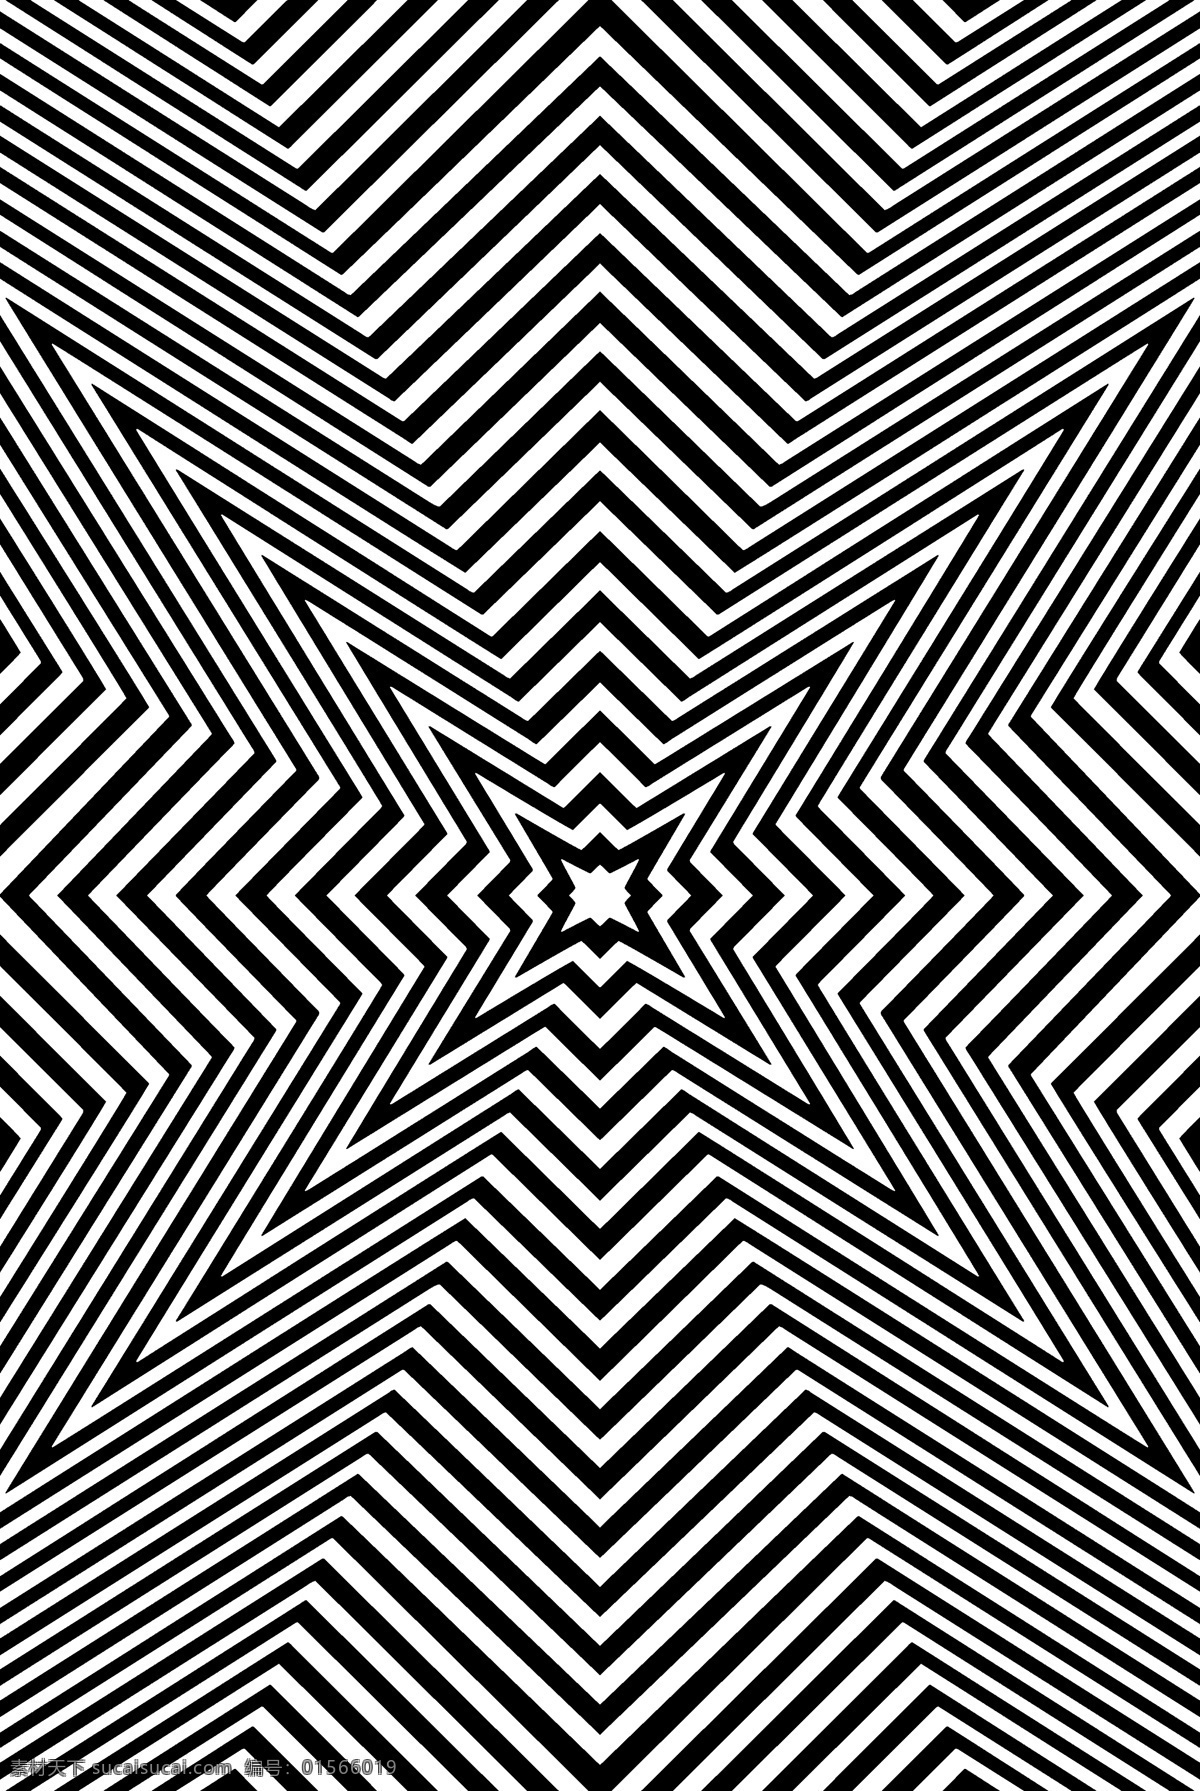 视觉错乱 几何 构成 错觉 黑白 条格 条框 图案 视觉效果 眼花 视觉 抽象底纹 底纹边框